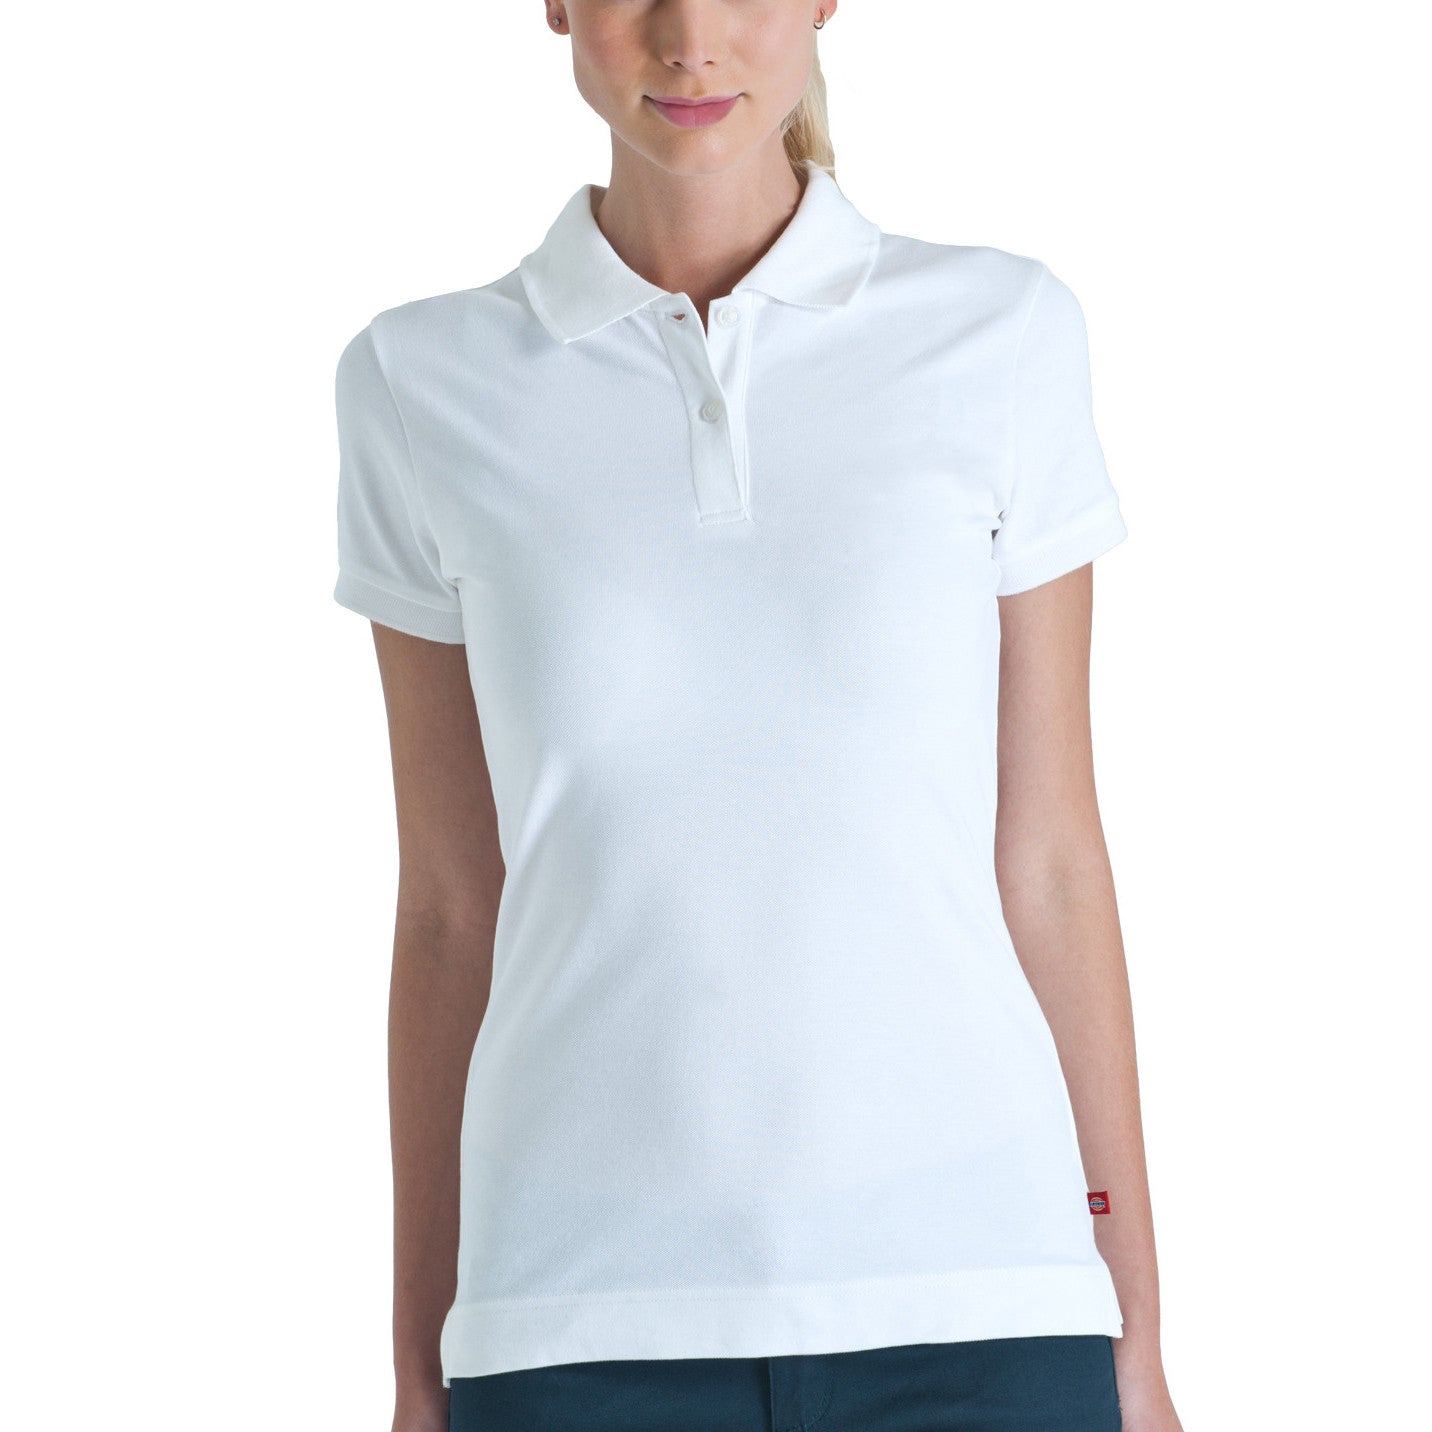 plain white polo shirt womens